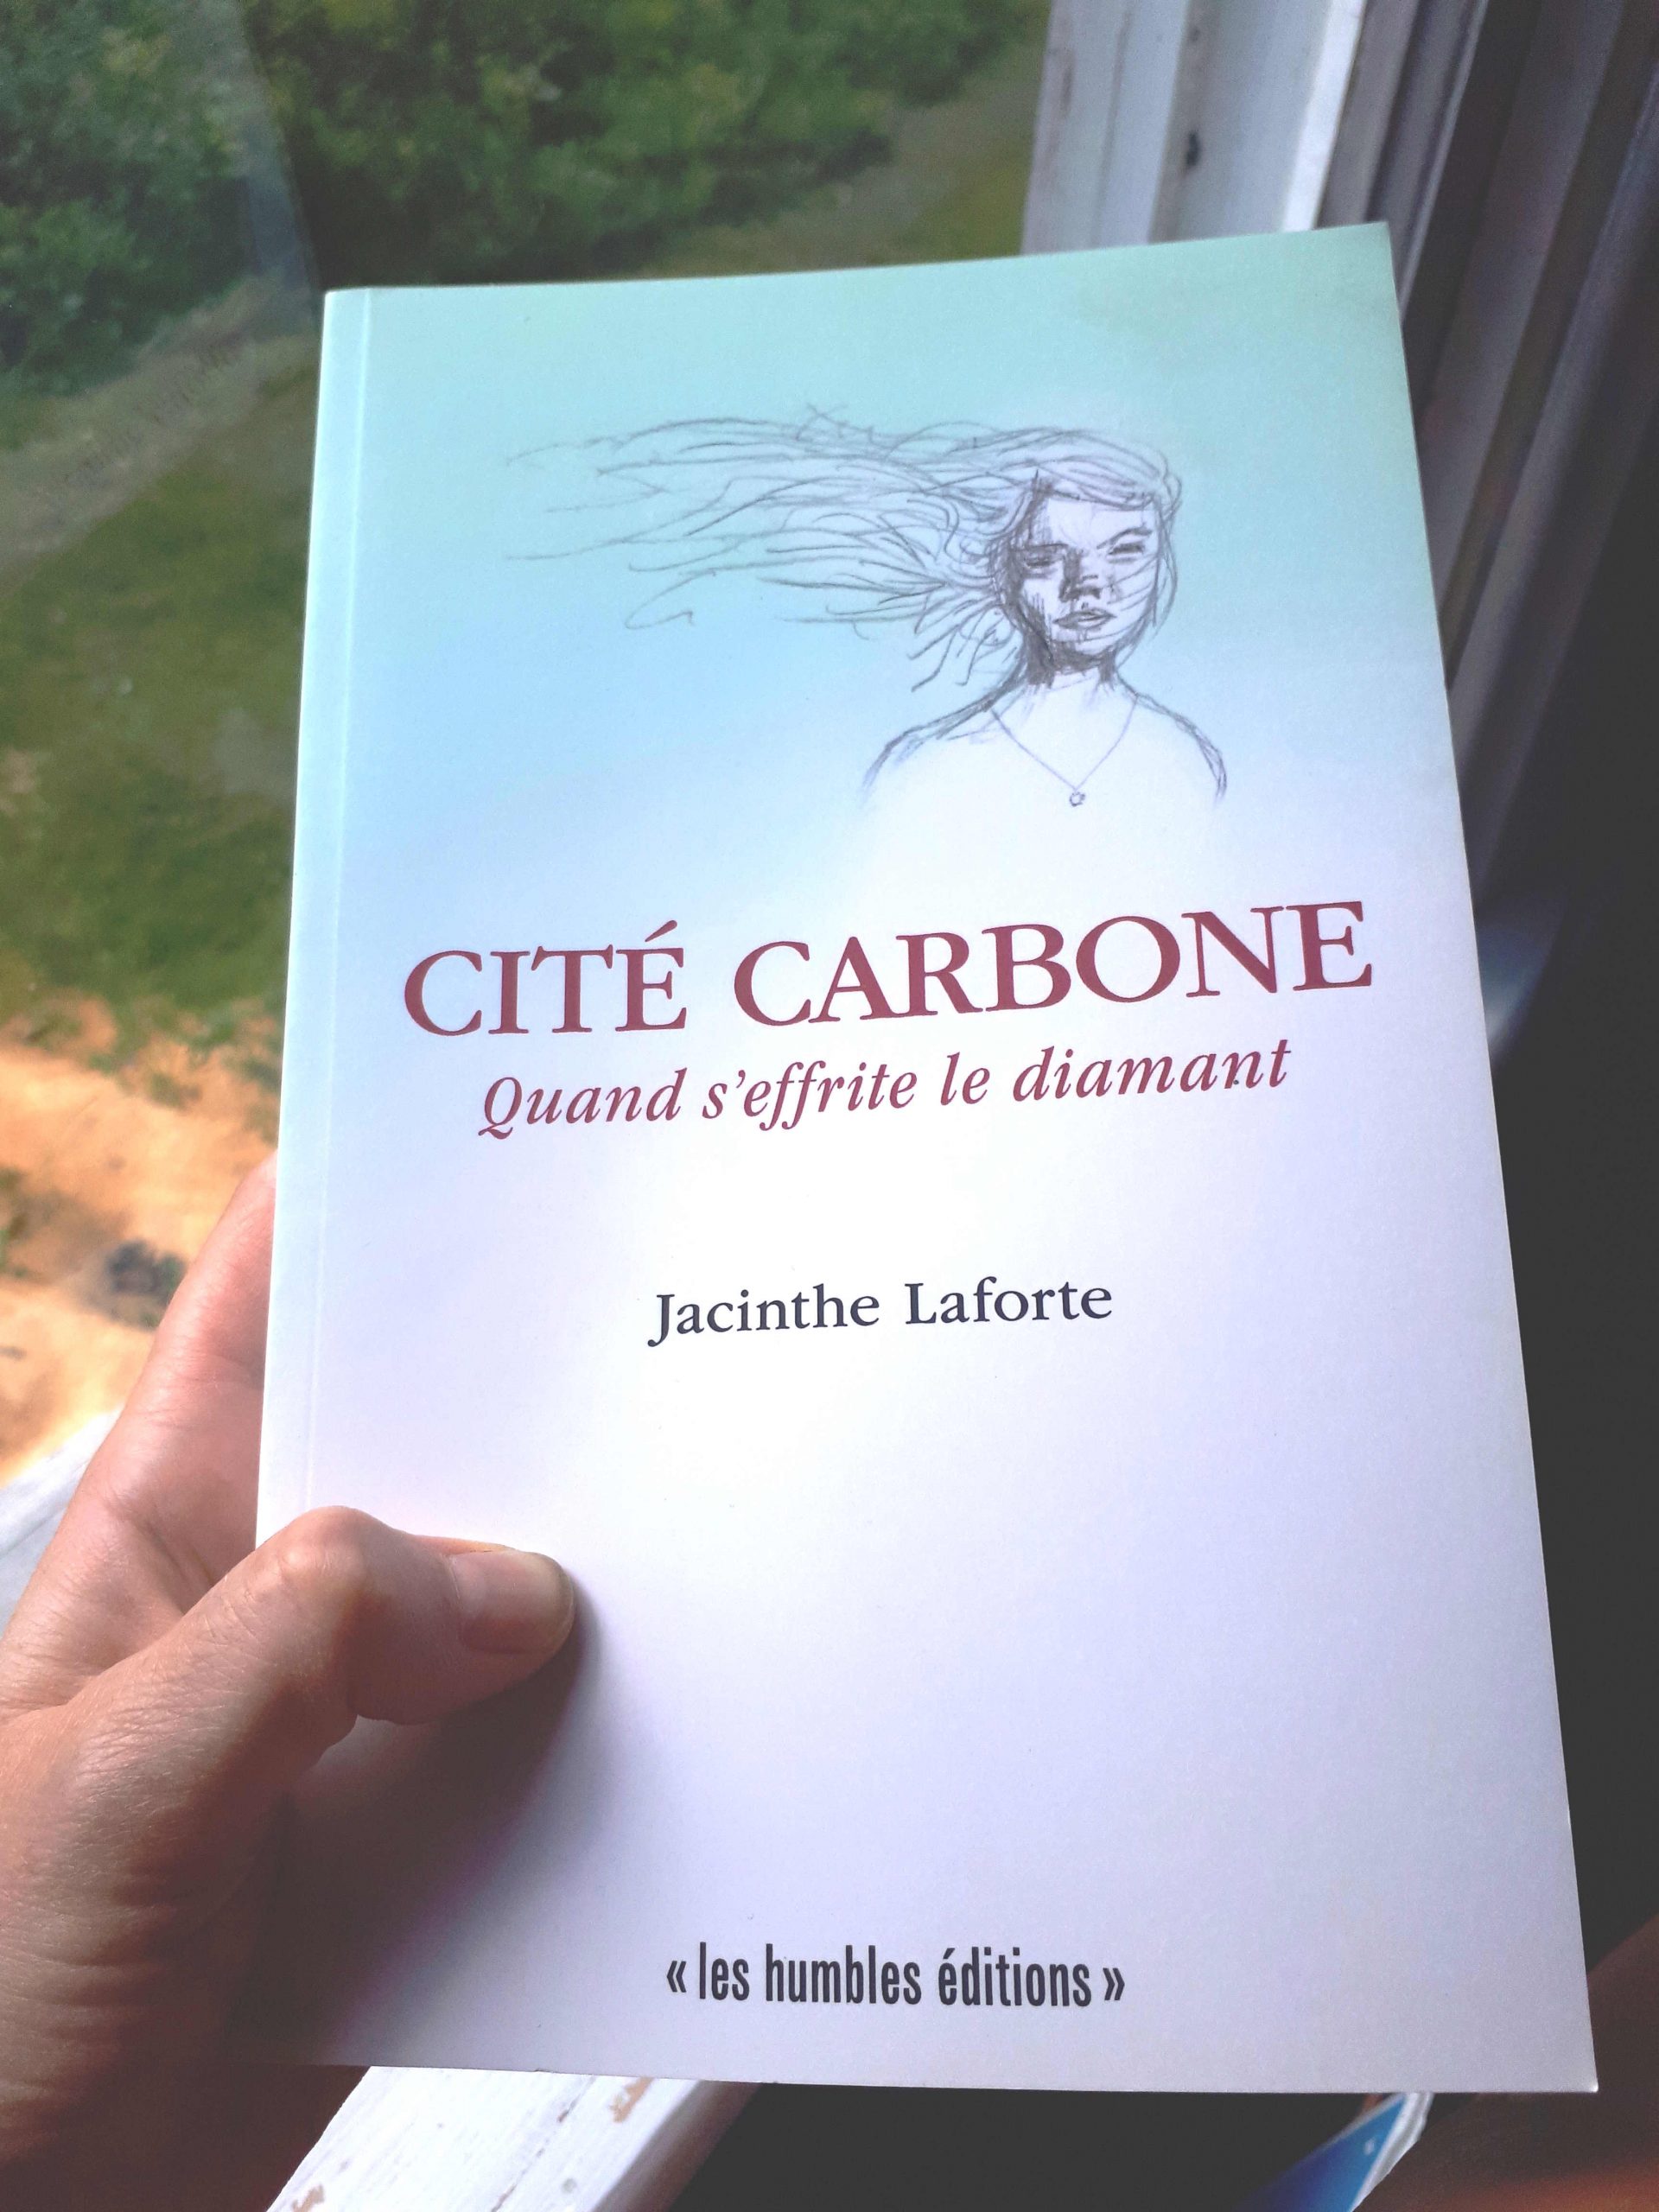 Livre papier Cité carbone de Jacinthe Laforte tenu dans une main